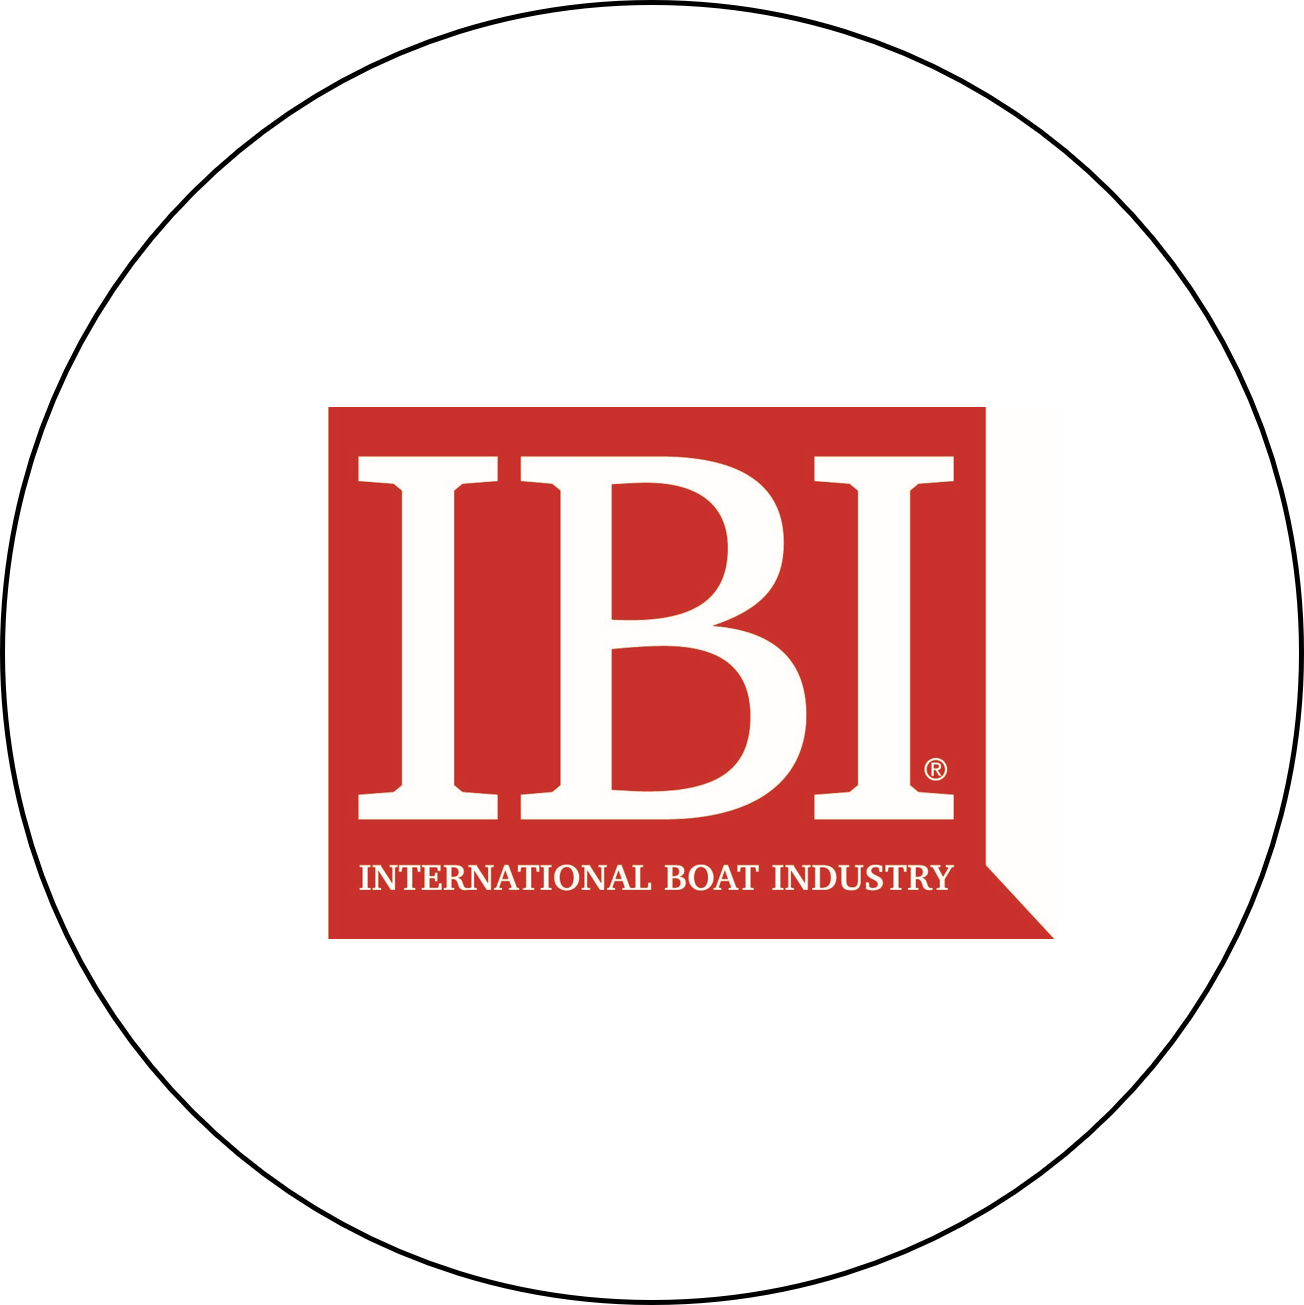 Website IBI